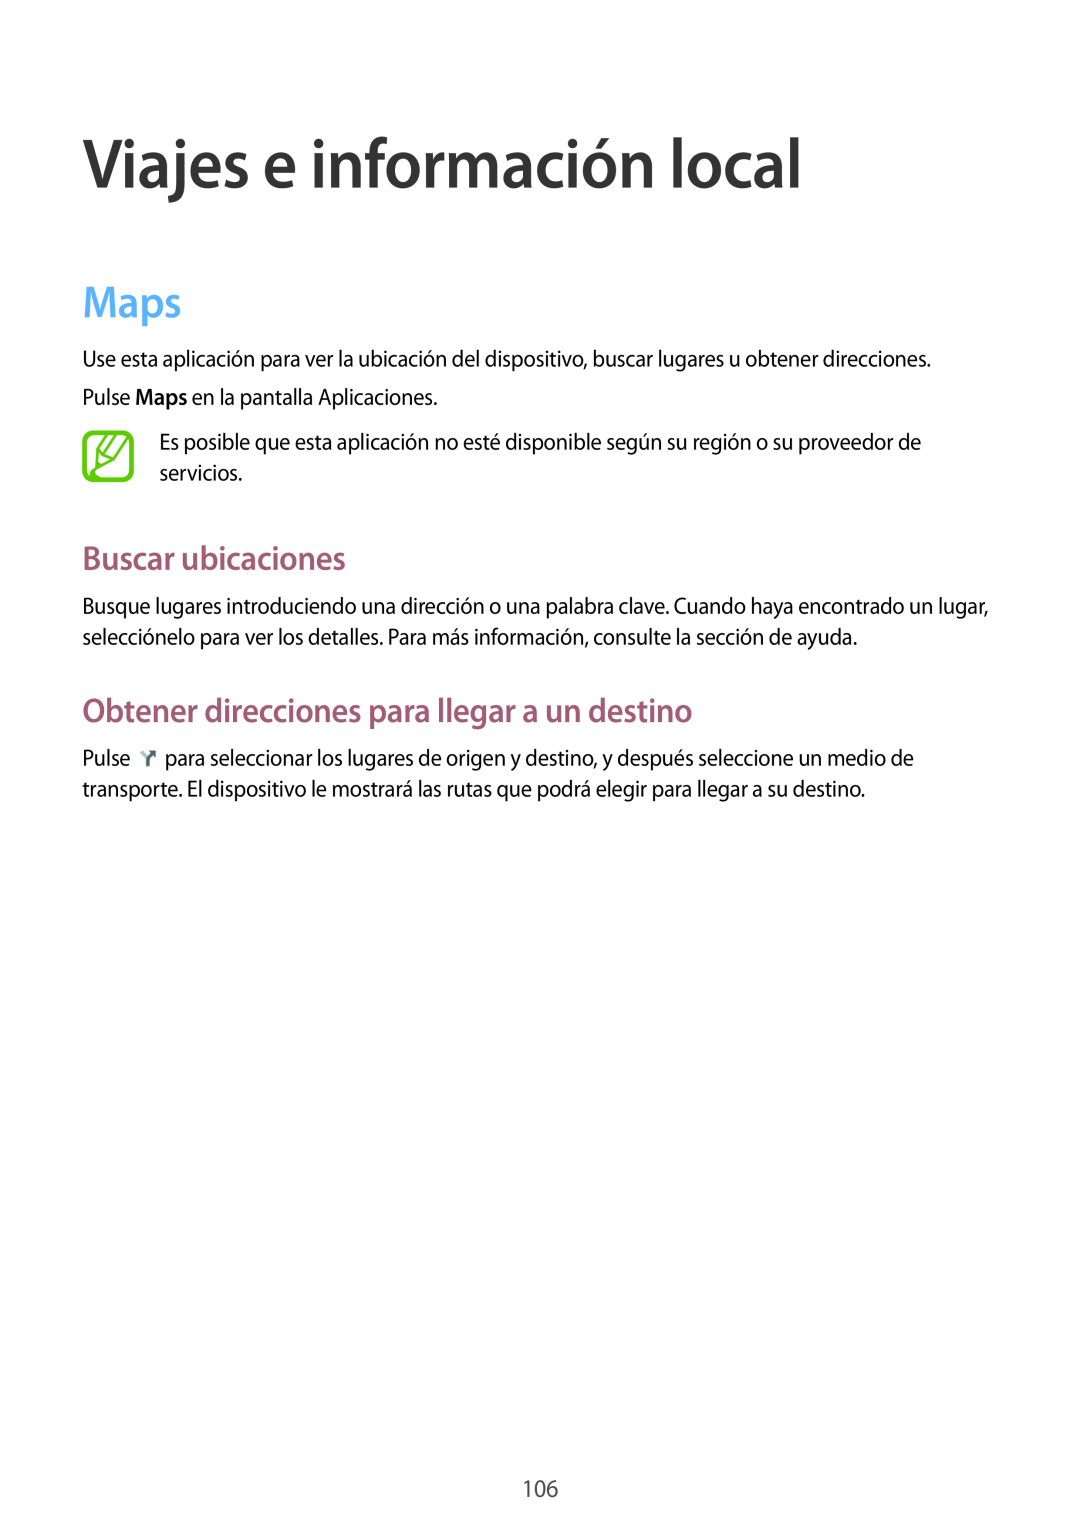 Samsung SM-T3150ZWAATL Viajes e información local, Maps, Buscar ubicaciones, Obtener direcciones para llegar a un destino 